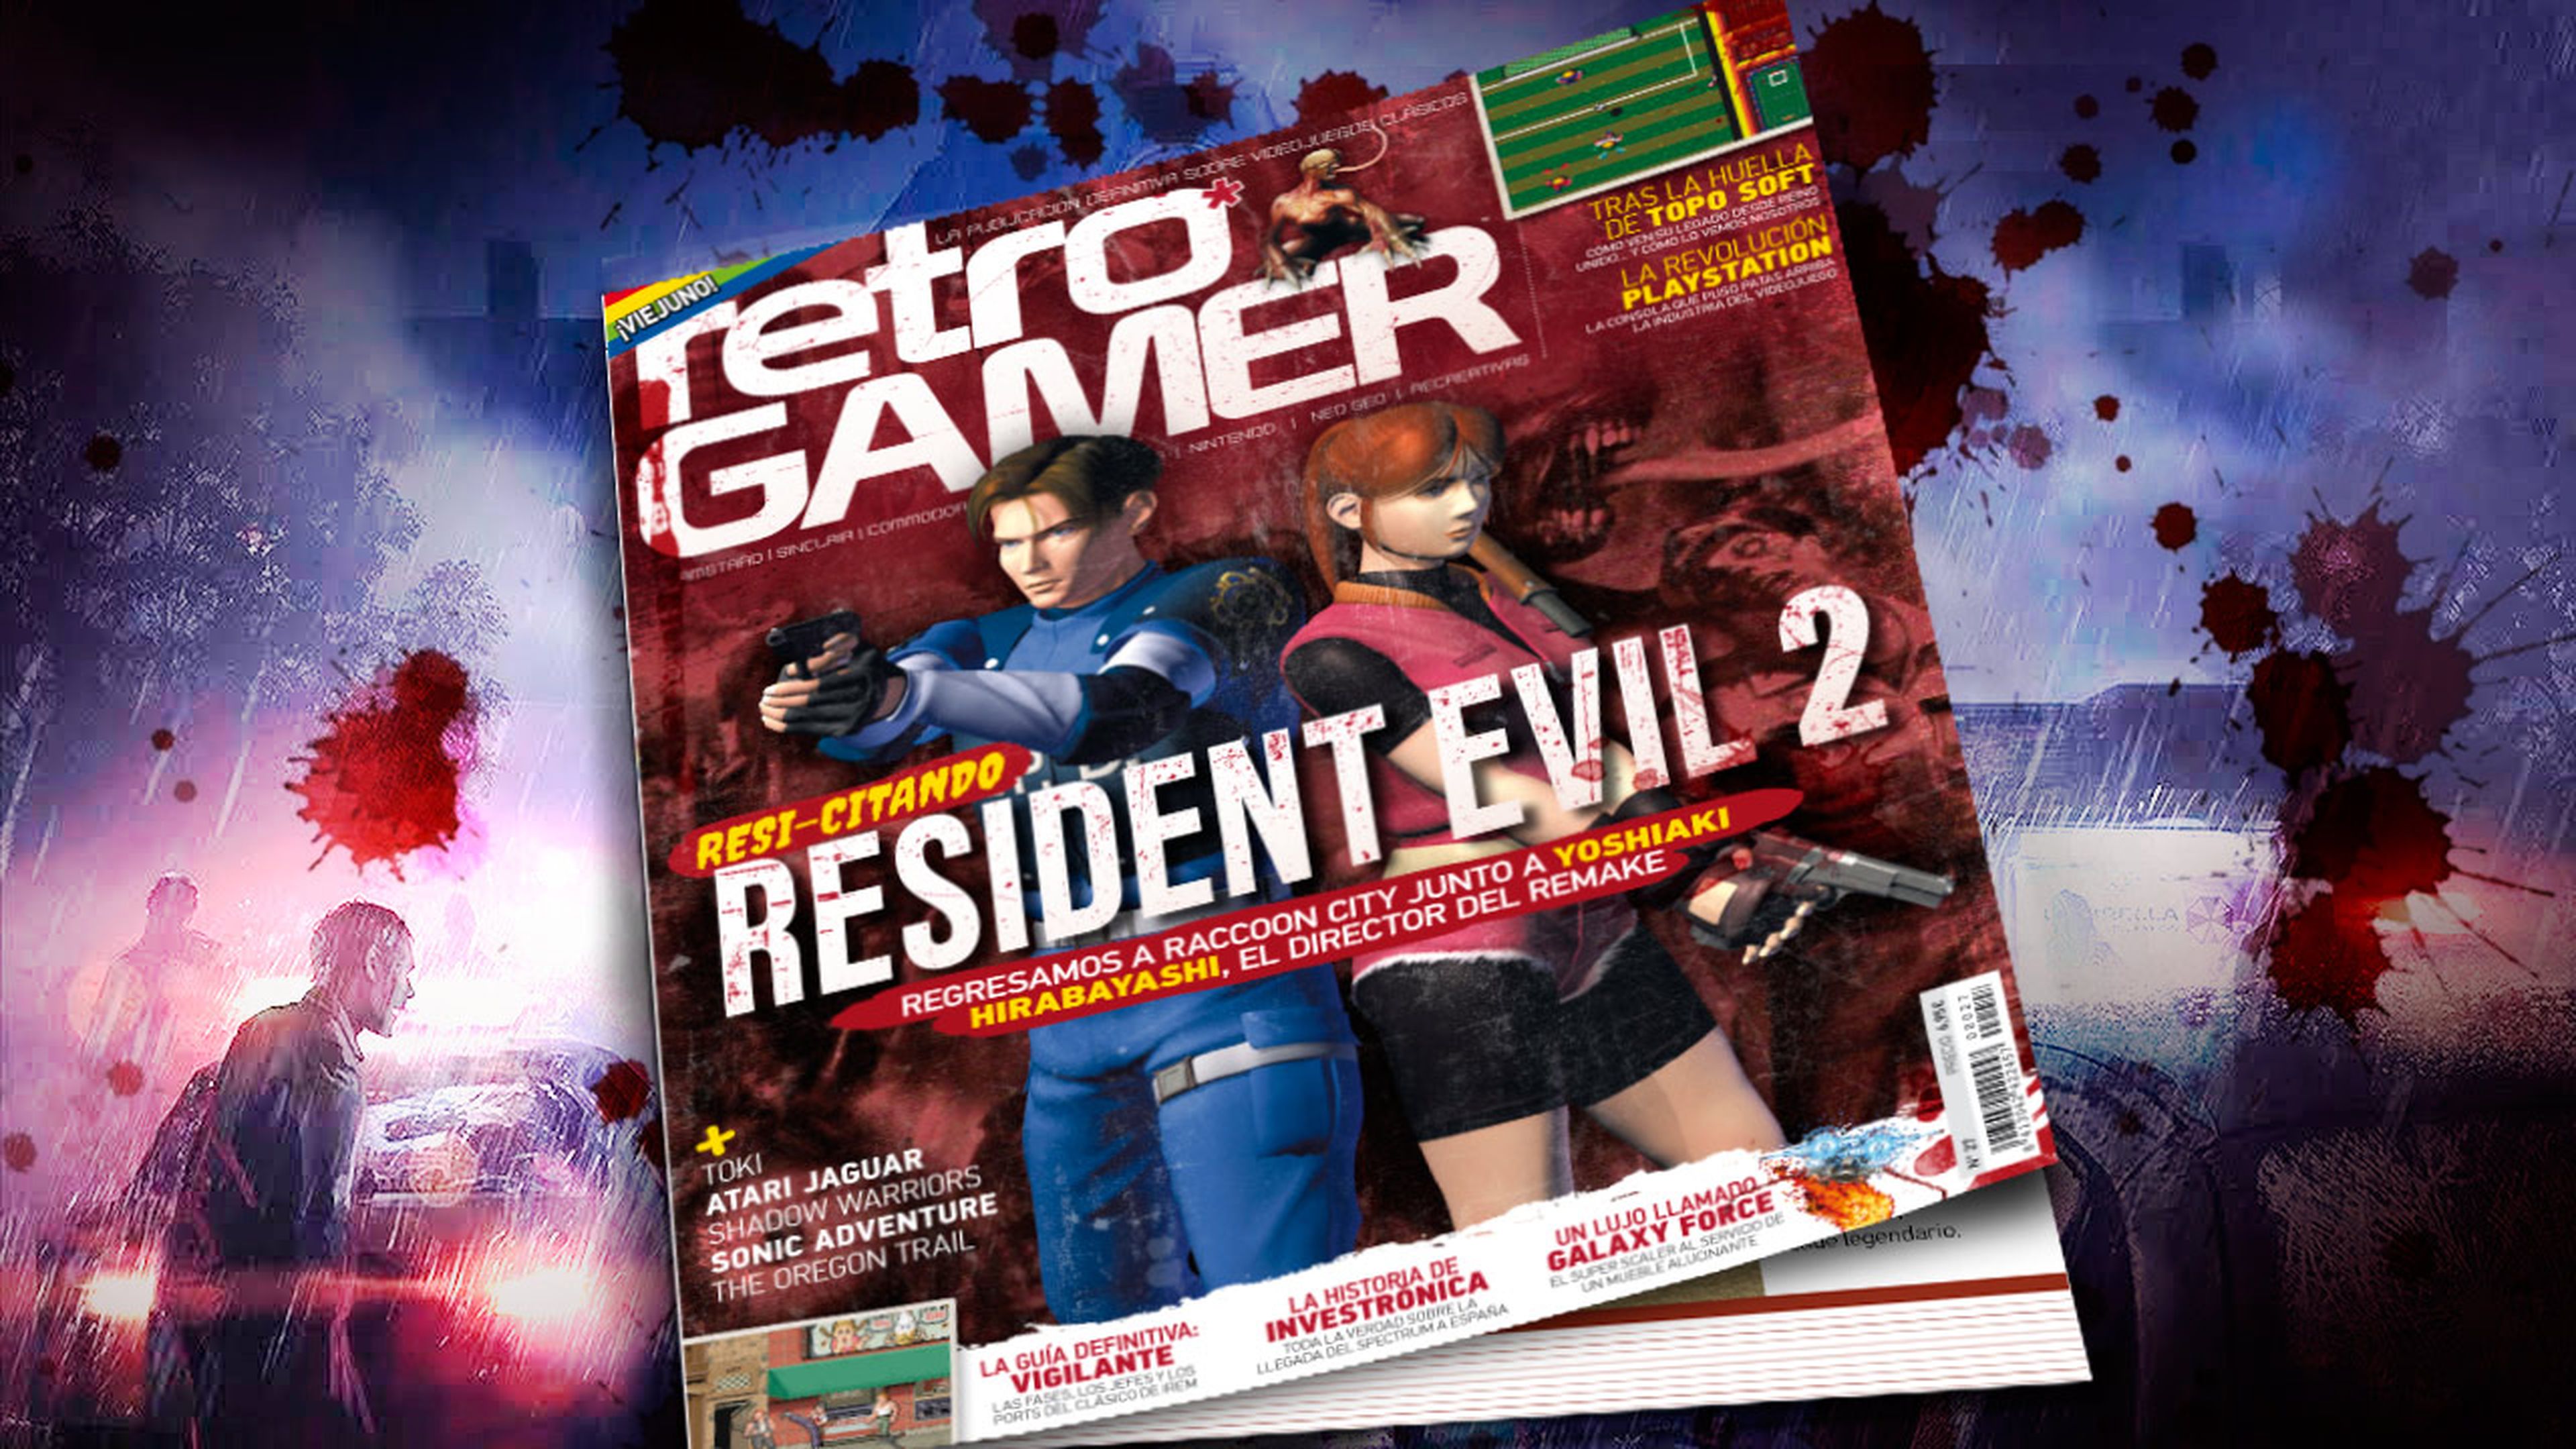 Retro Gamer 27